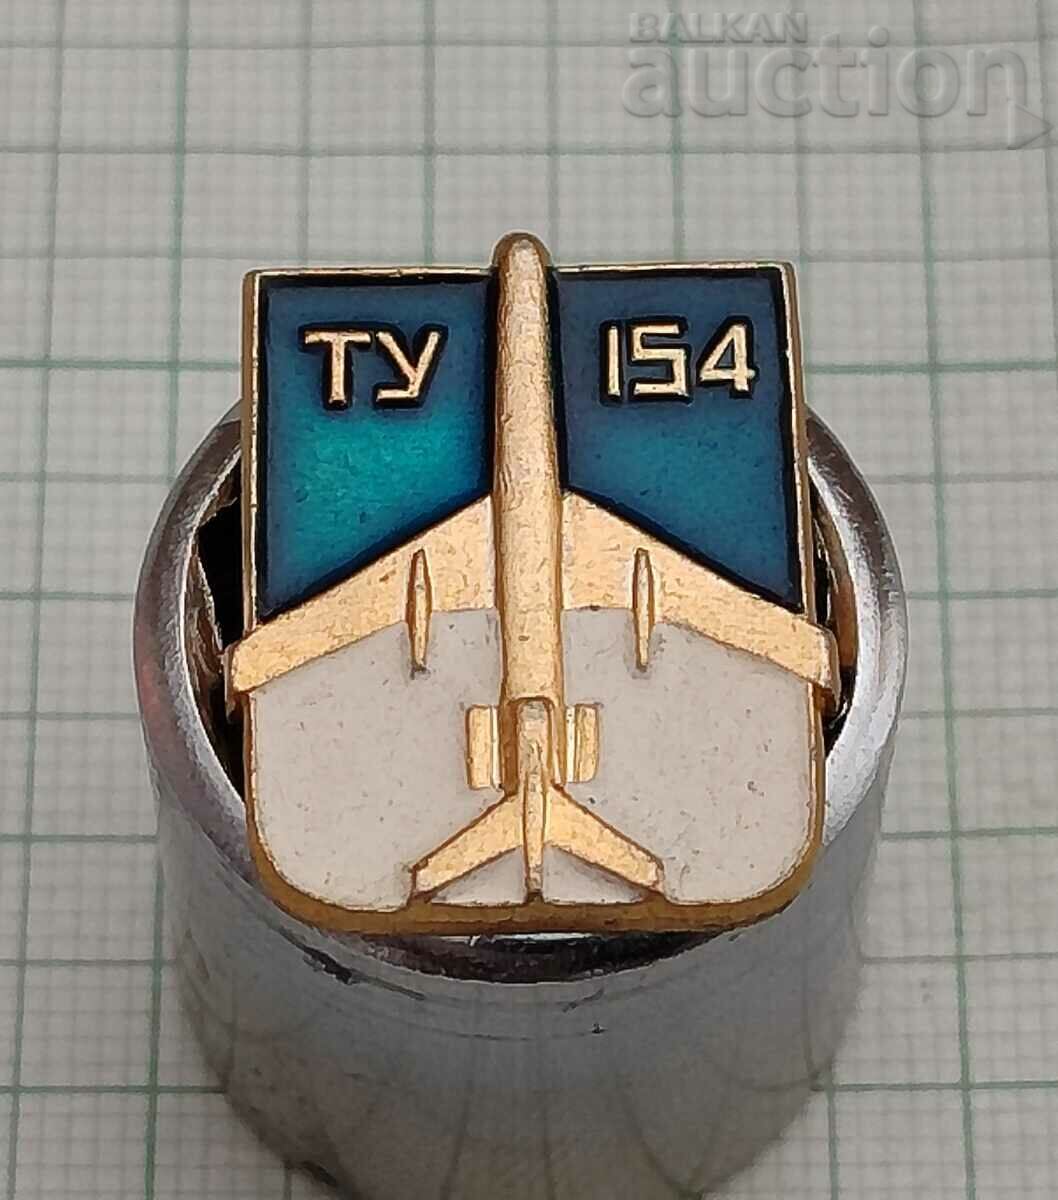 САМОЛЕТ "ТУ-154" СССР ЗНАЧКА